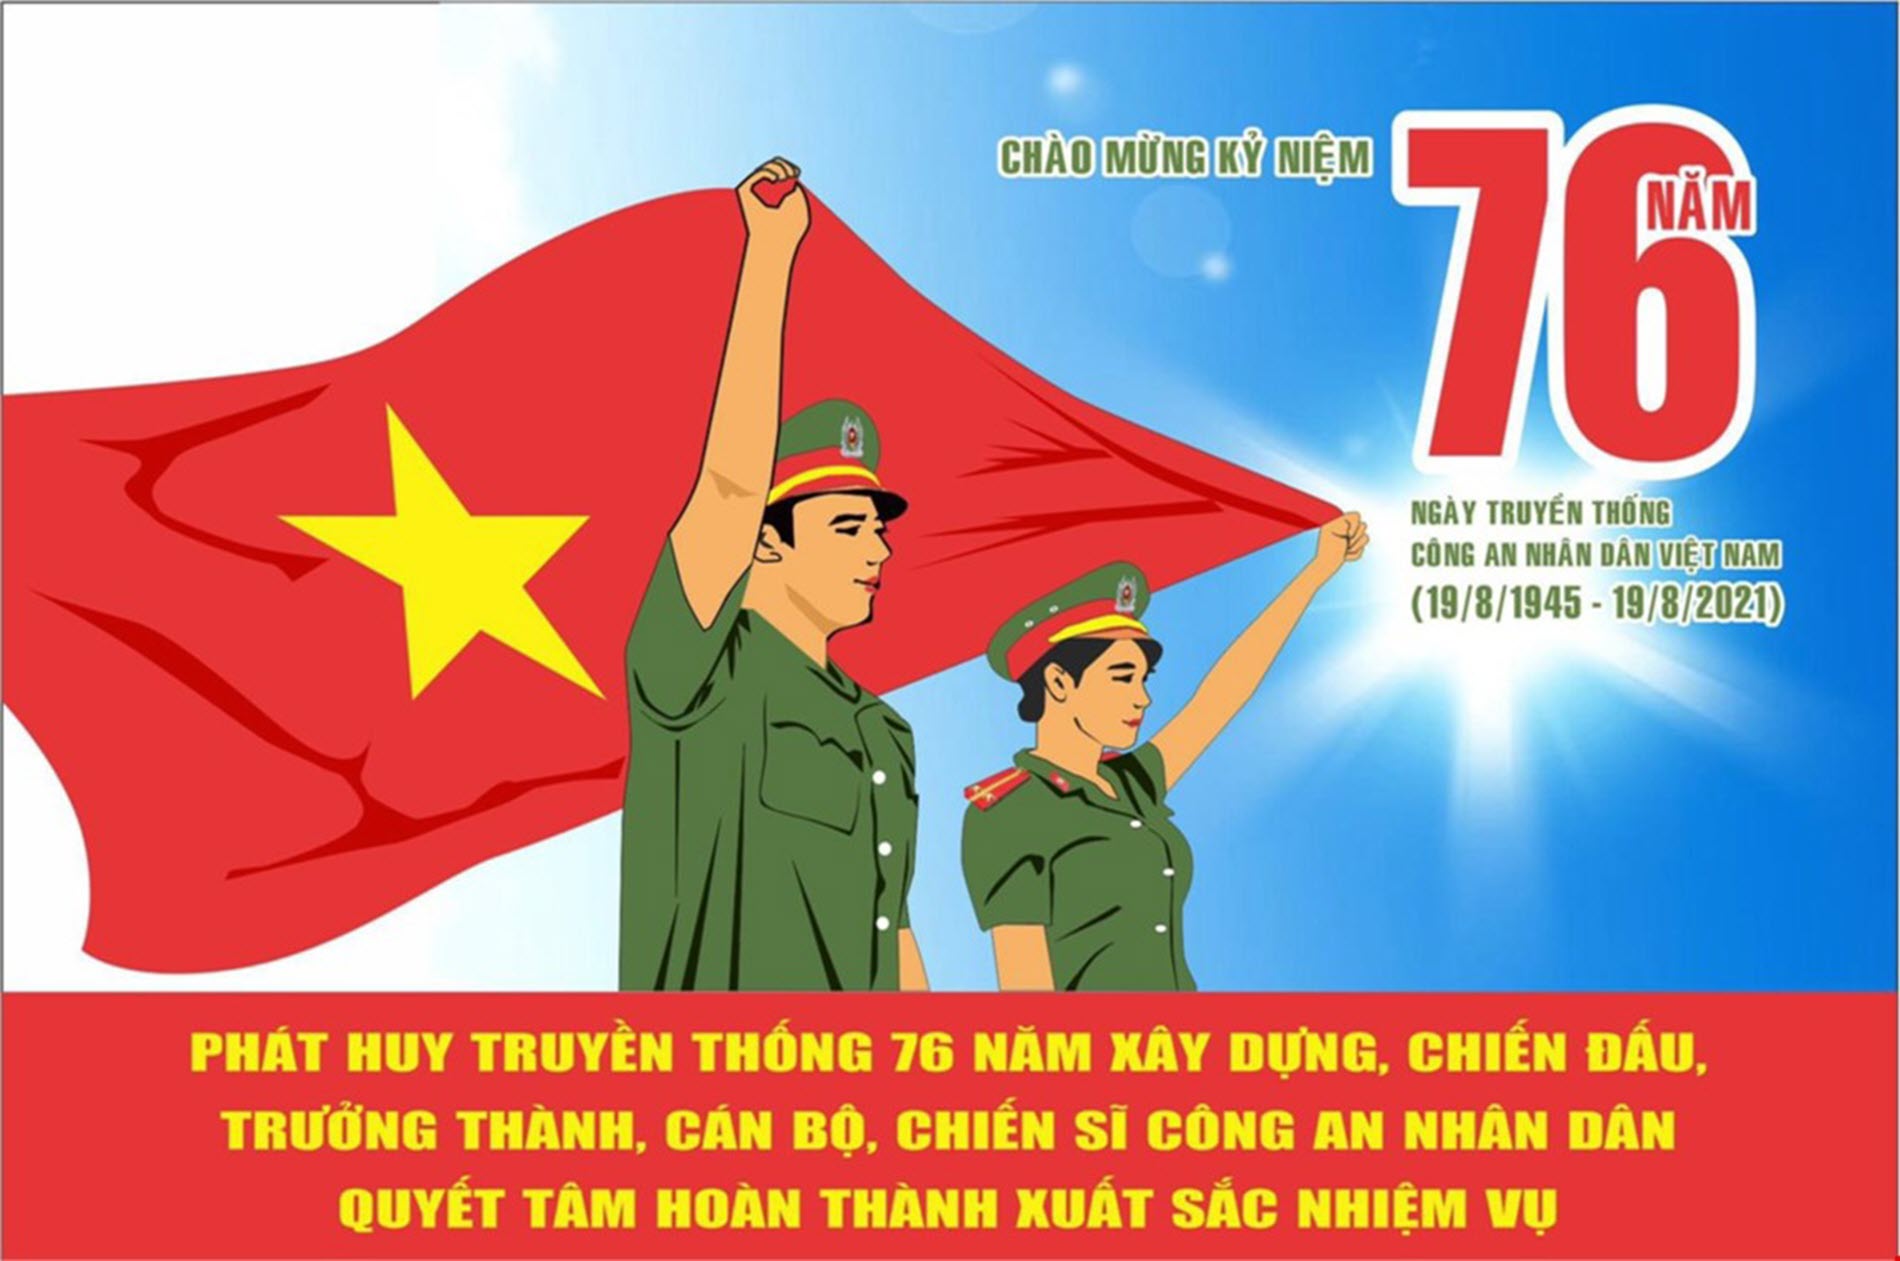 Vụ pano in hình quốc kỳ Trung Quốc Tạm đình chỉ hai cán bộ  Xã hội   Vietnam VietnamPlus